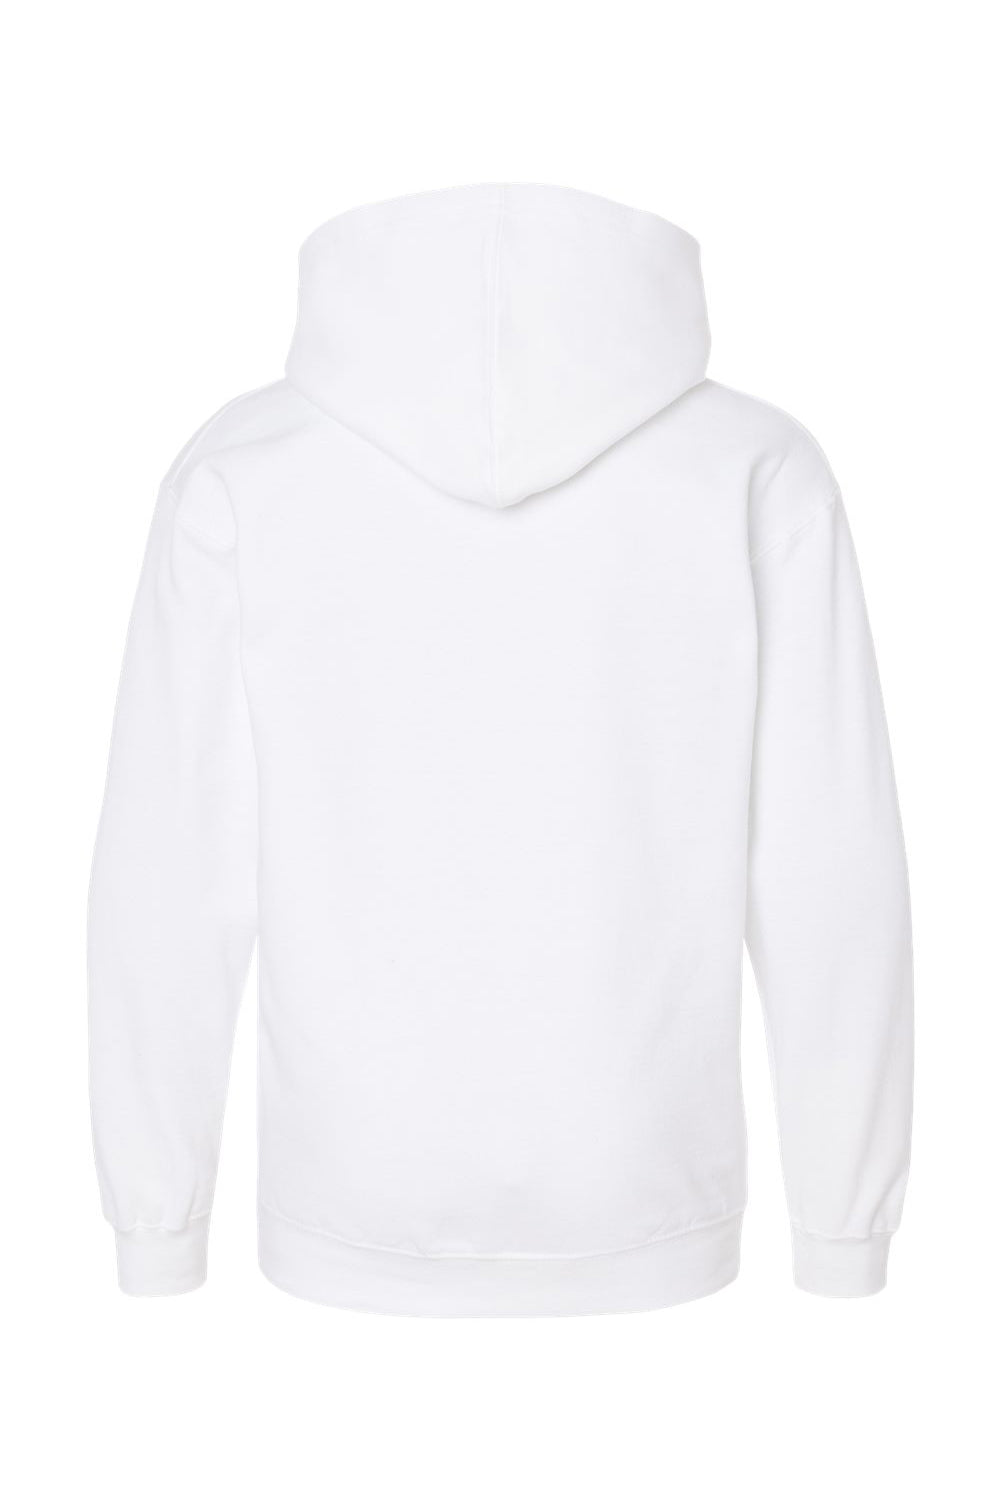 Tultex 320Y Youth Hooded Sweatshirt Hoodie White Flat Back